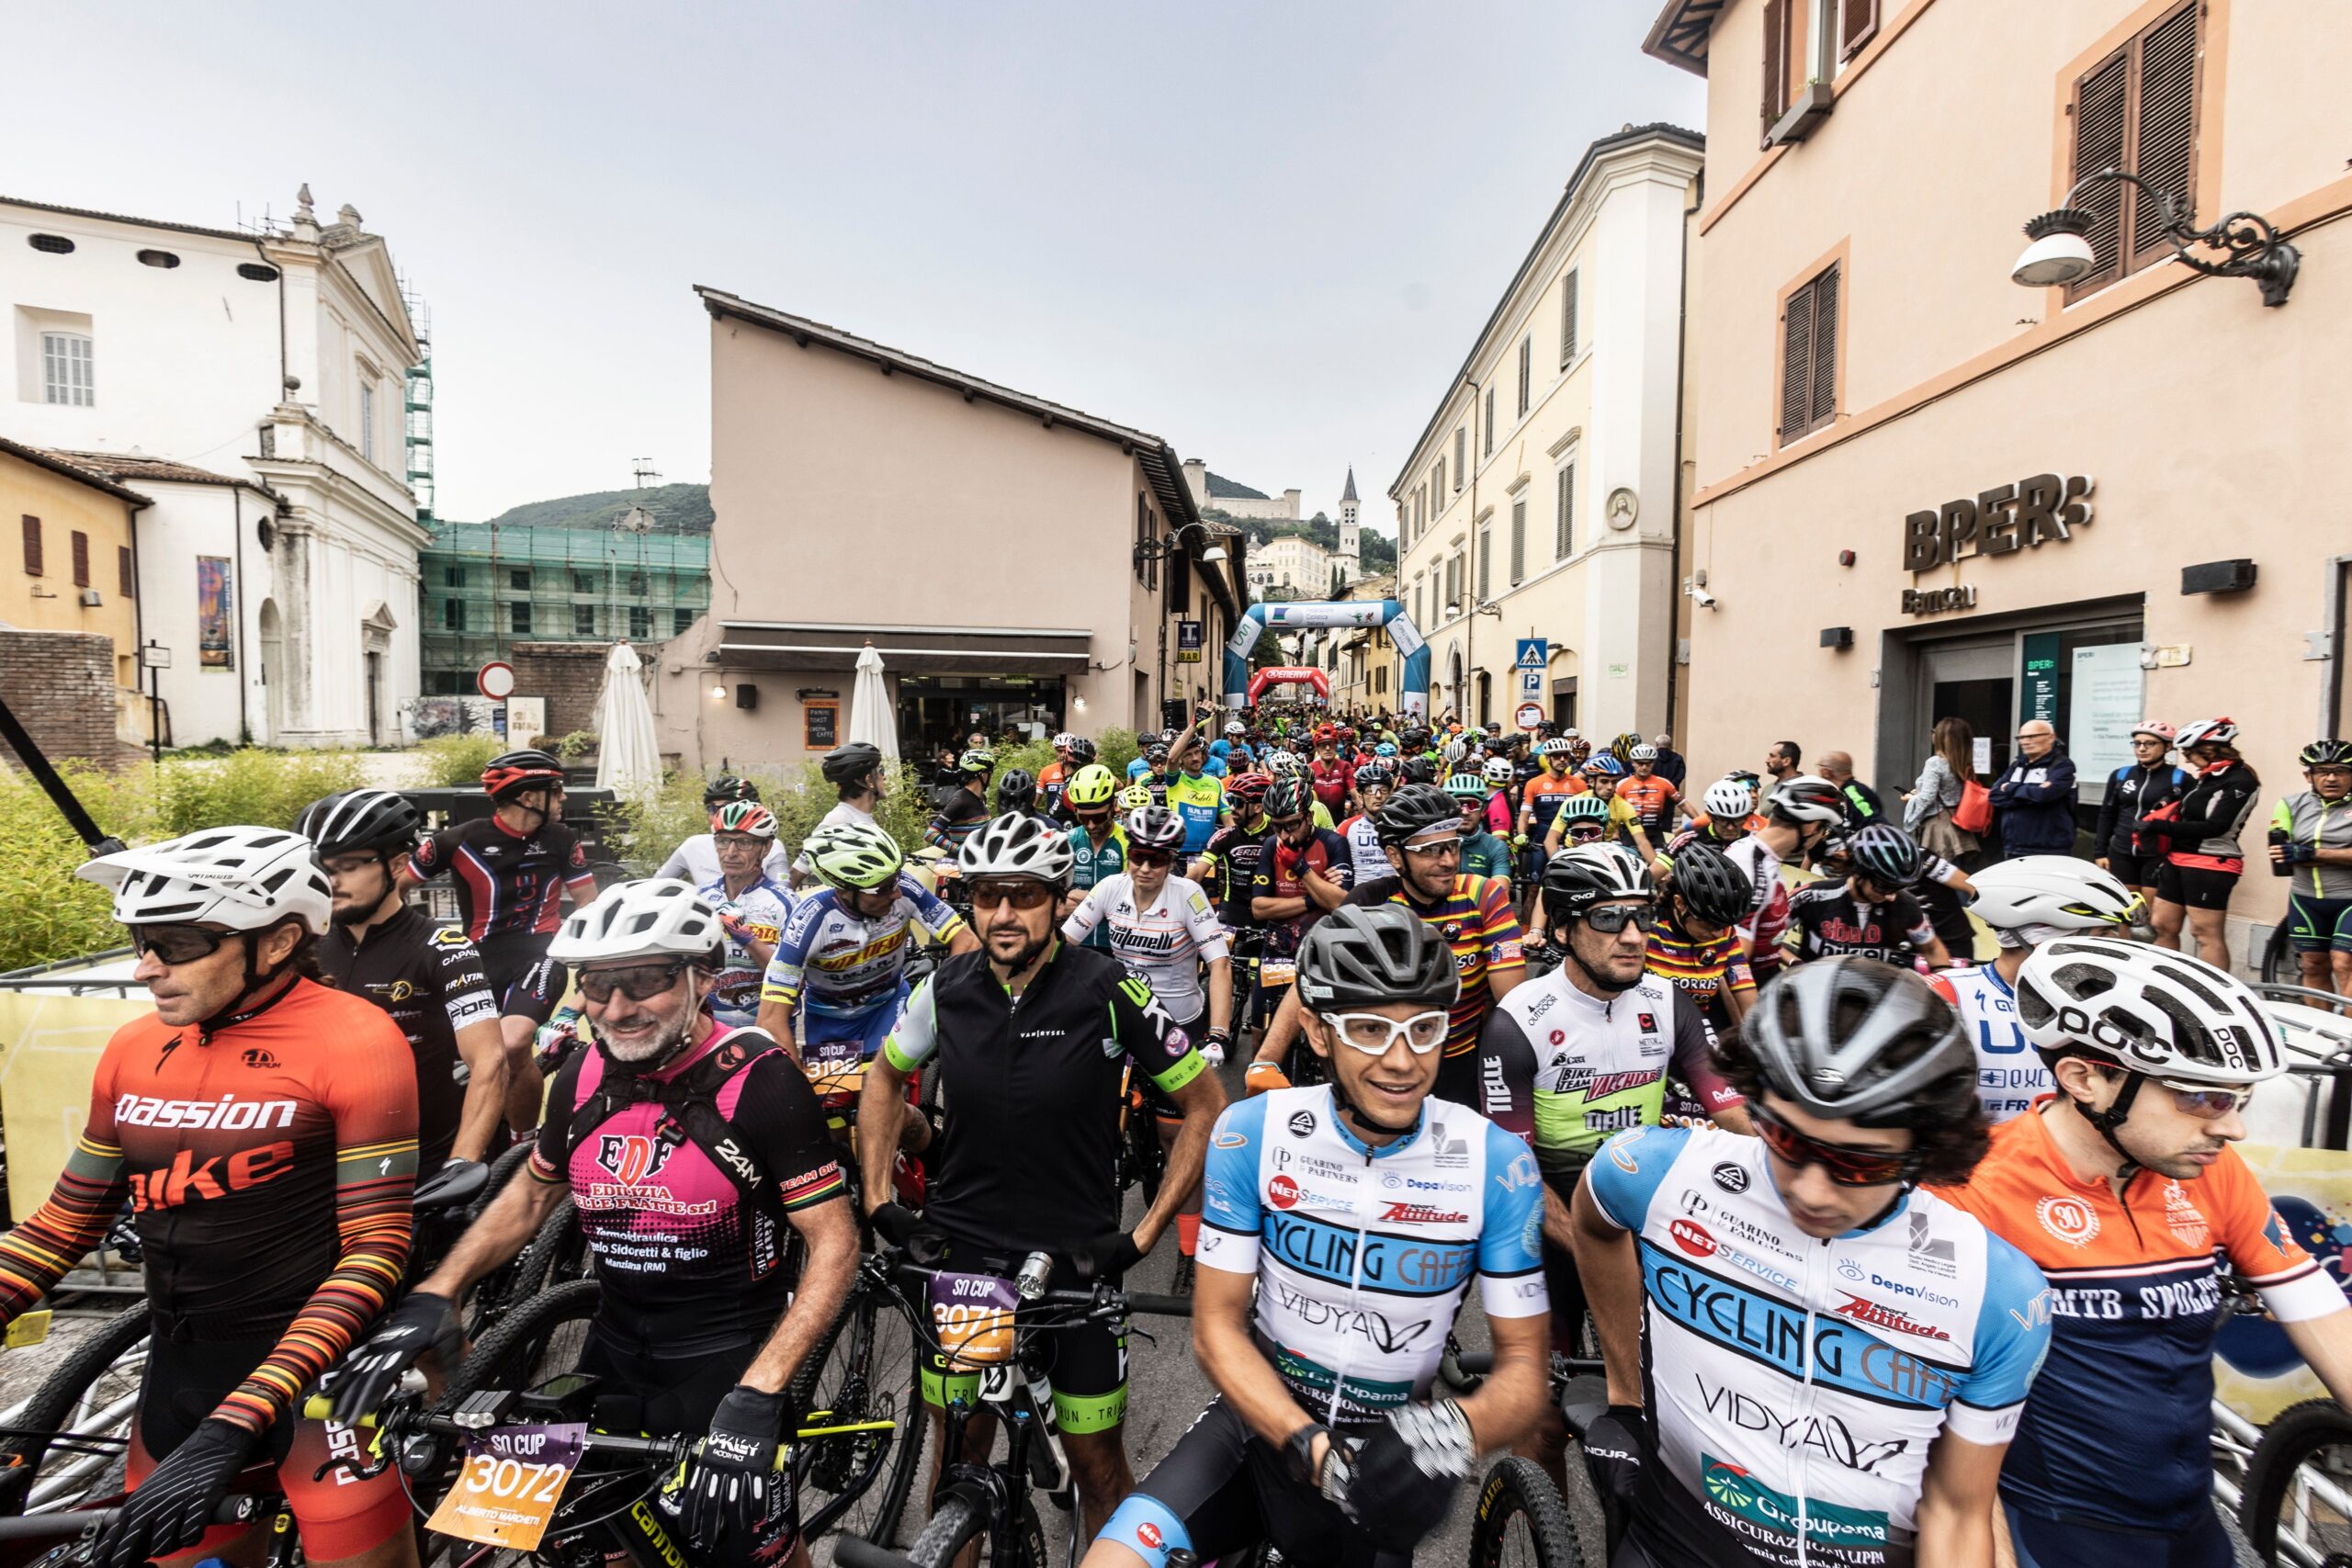 La SpoletoNorcia in MTB compie 10 anni: oltre 1500 gli iscritti all’evento cicloturistico